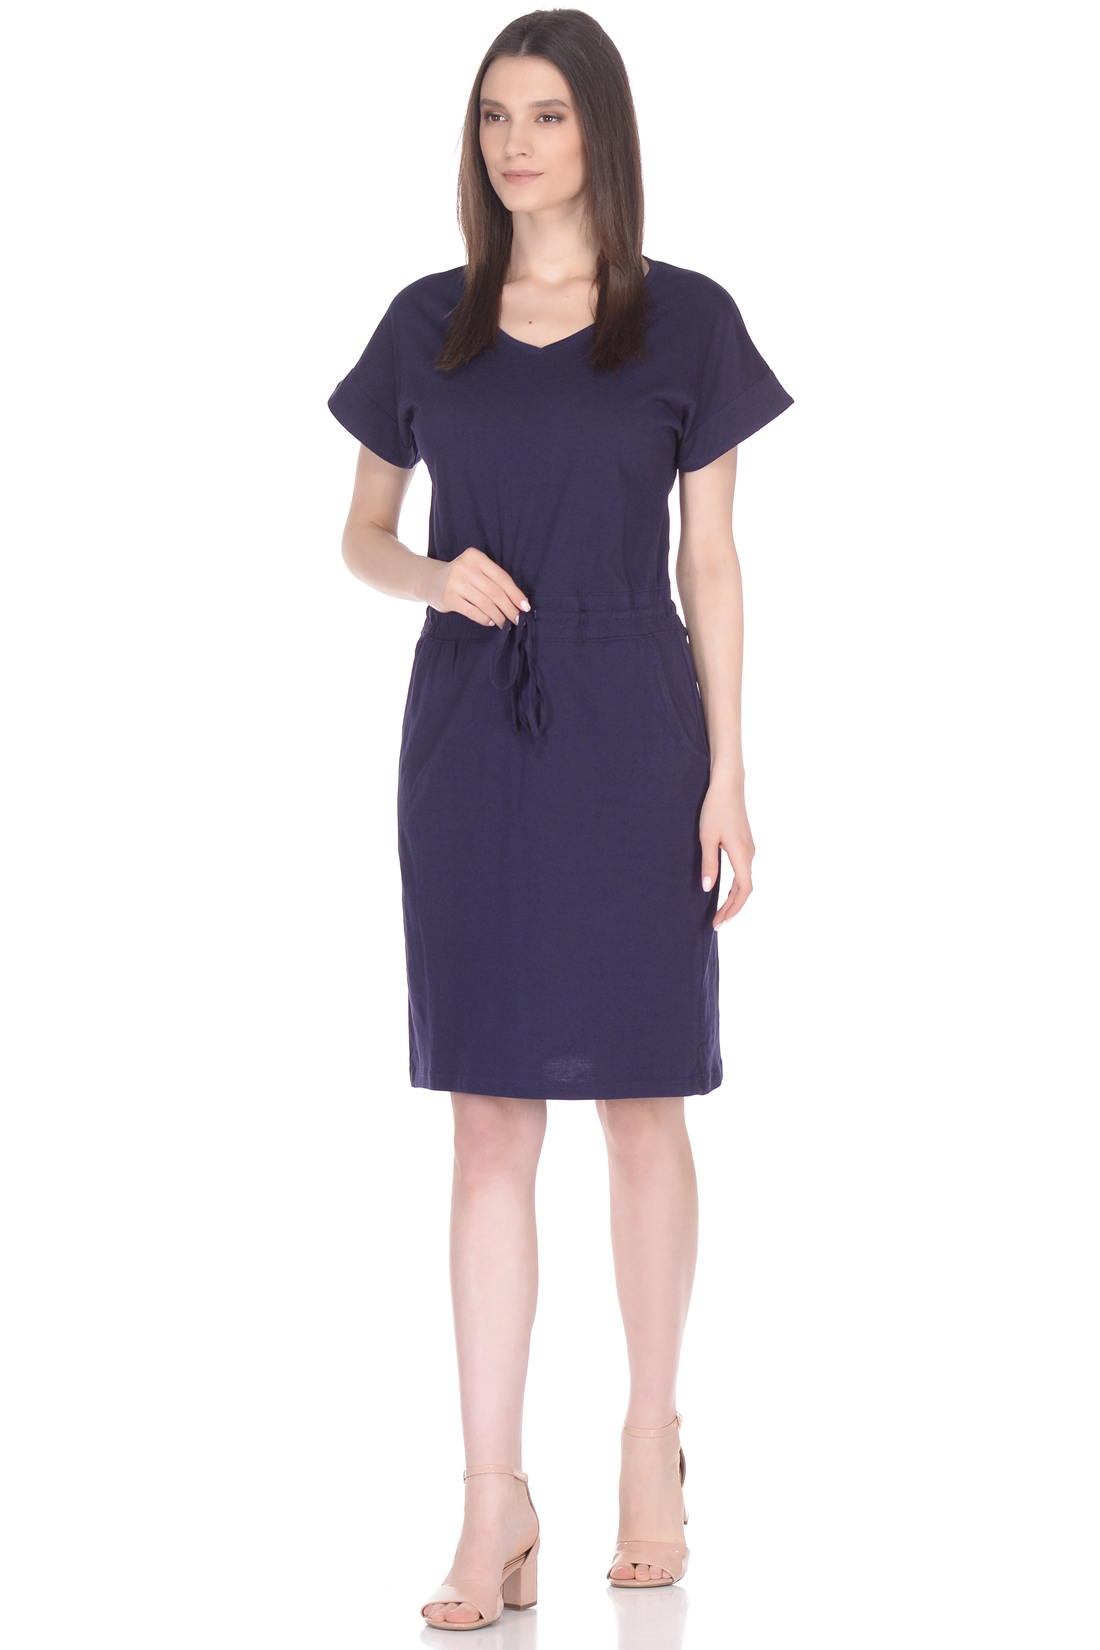 Пляжное платье из трикотажа (арт. baon B458114), размер XXL, цвет синий Пляжное платье из трикотажа (арт. baon B458114) - фото 1